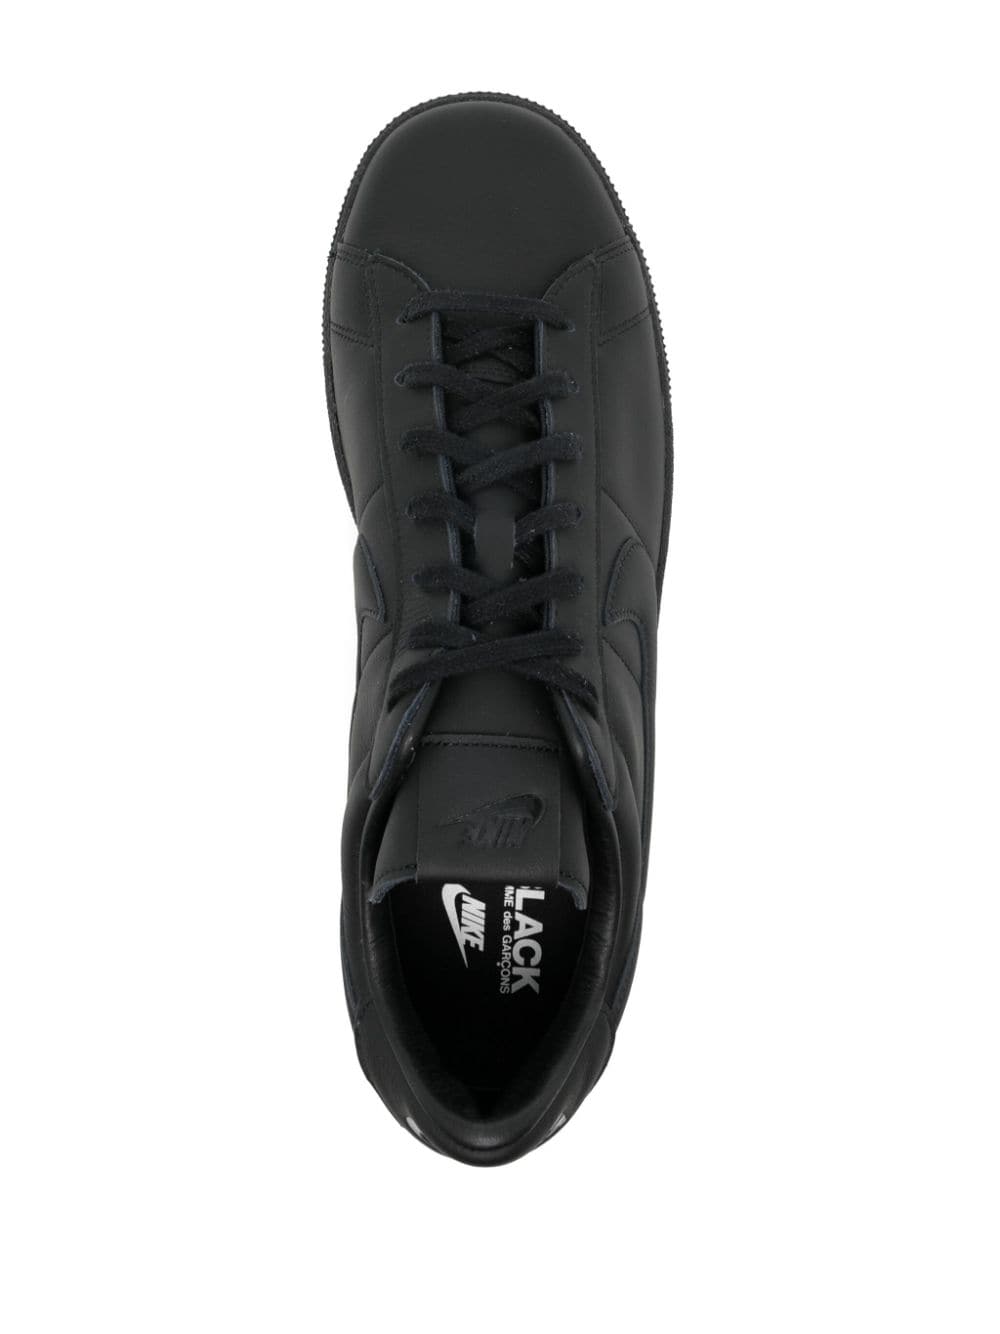 Shop Black Comme Des Garçons X Nike Classic Sp Leather Sneakers In Black